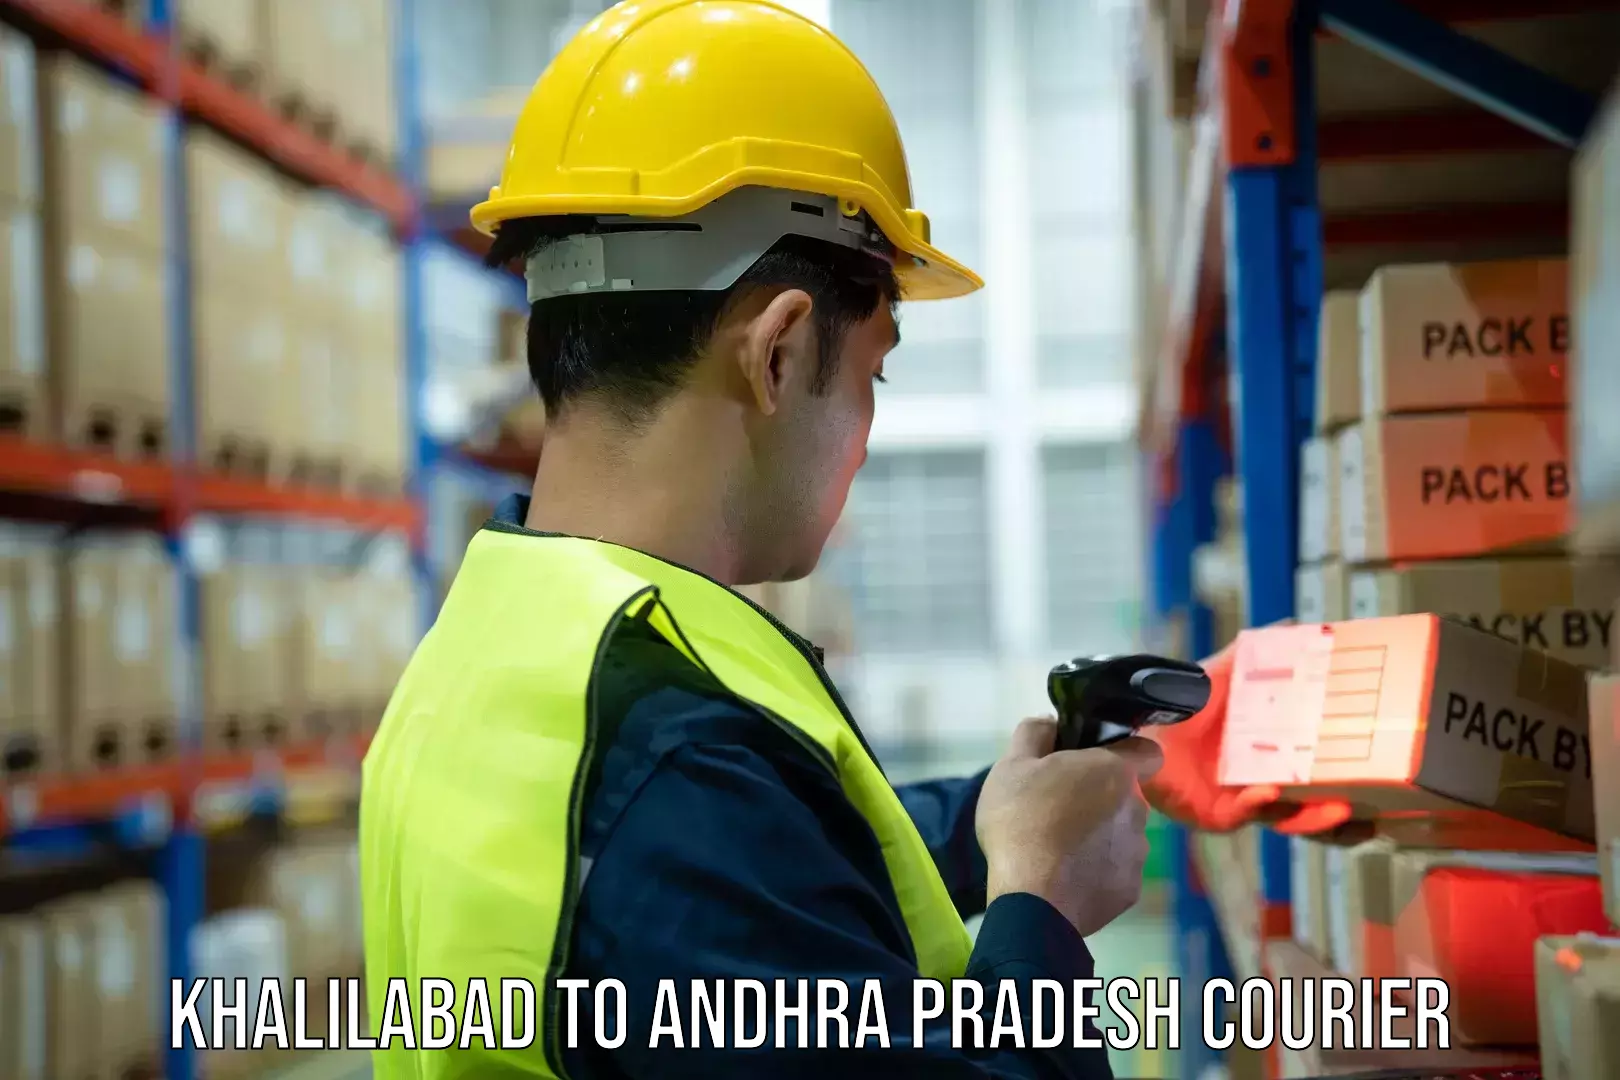 Advanced tracking systems Khalilabad to Andhra Pradesh